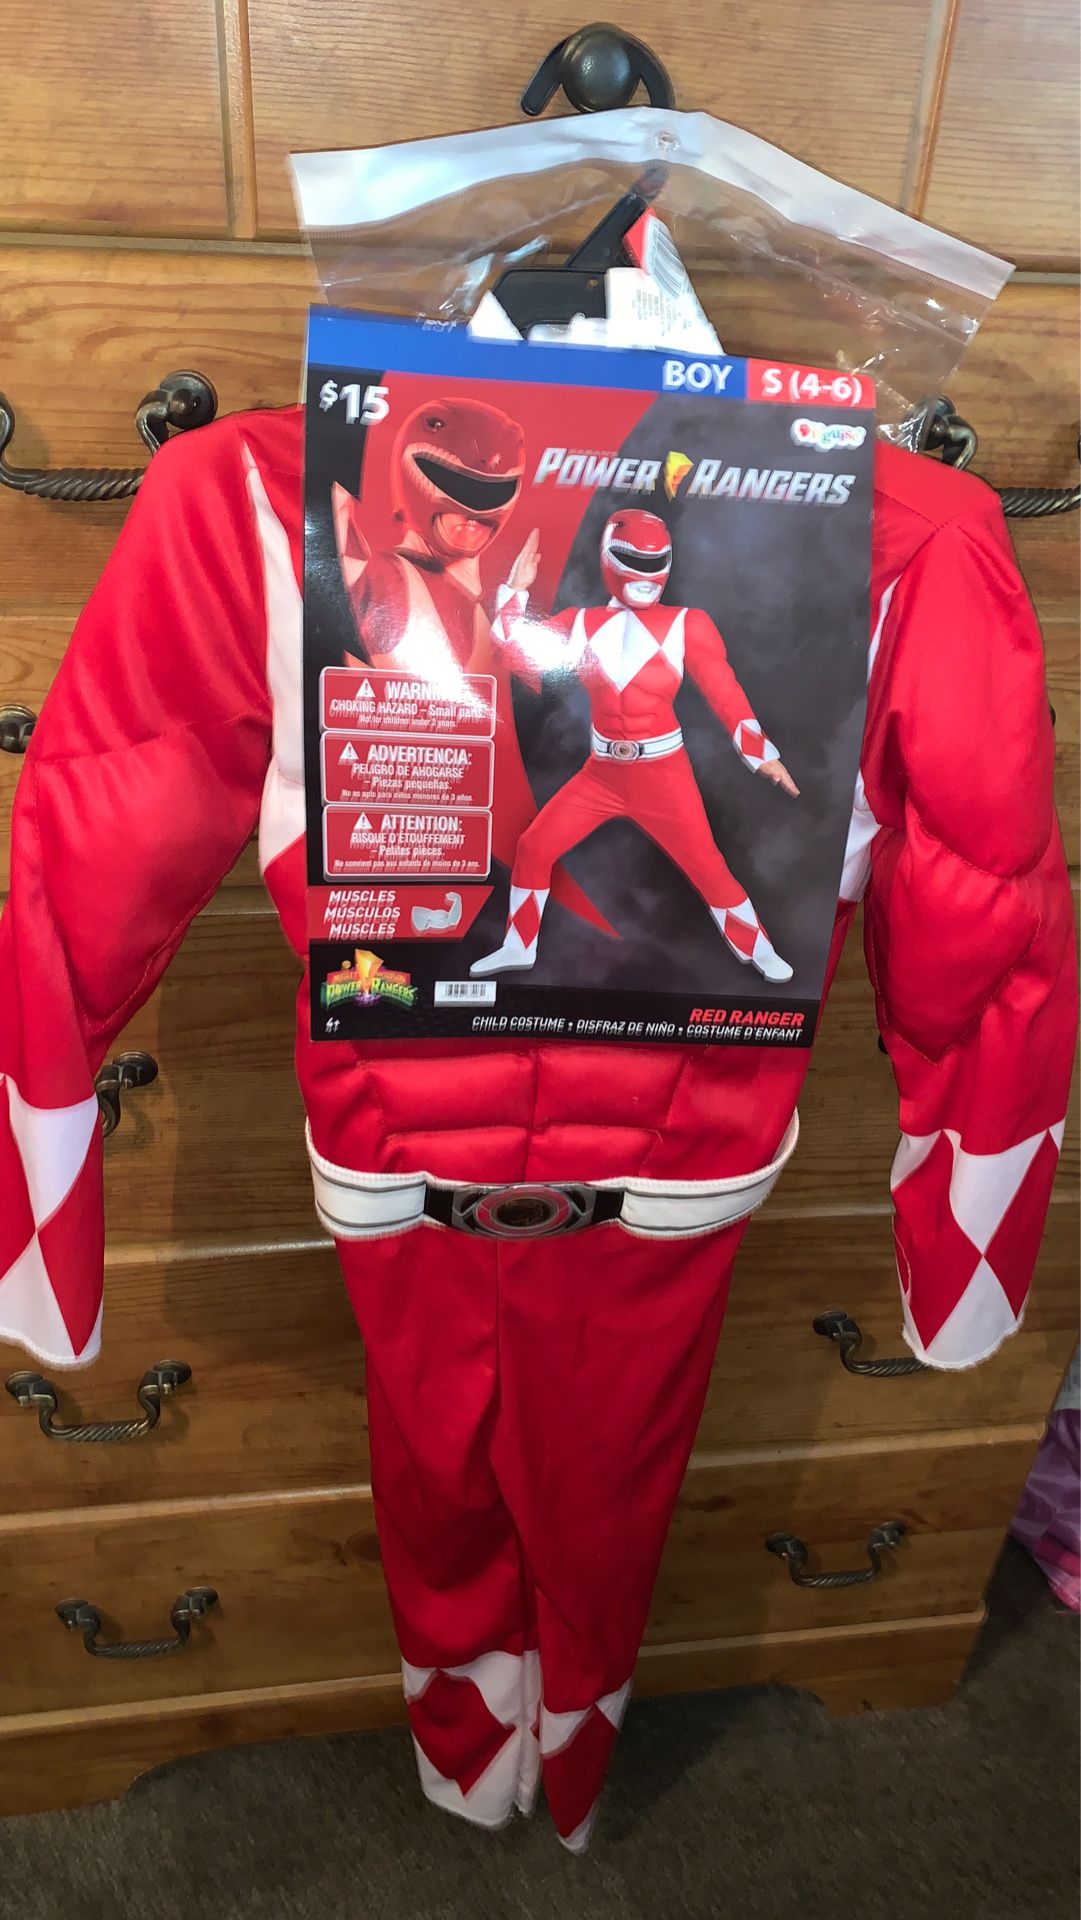 Power Ranger (Red rangerJason)$10 Firm size 4-6